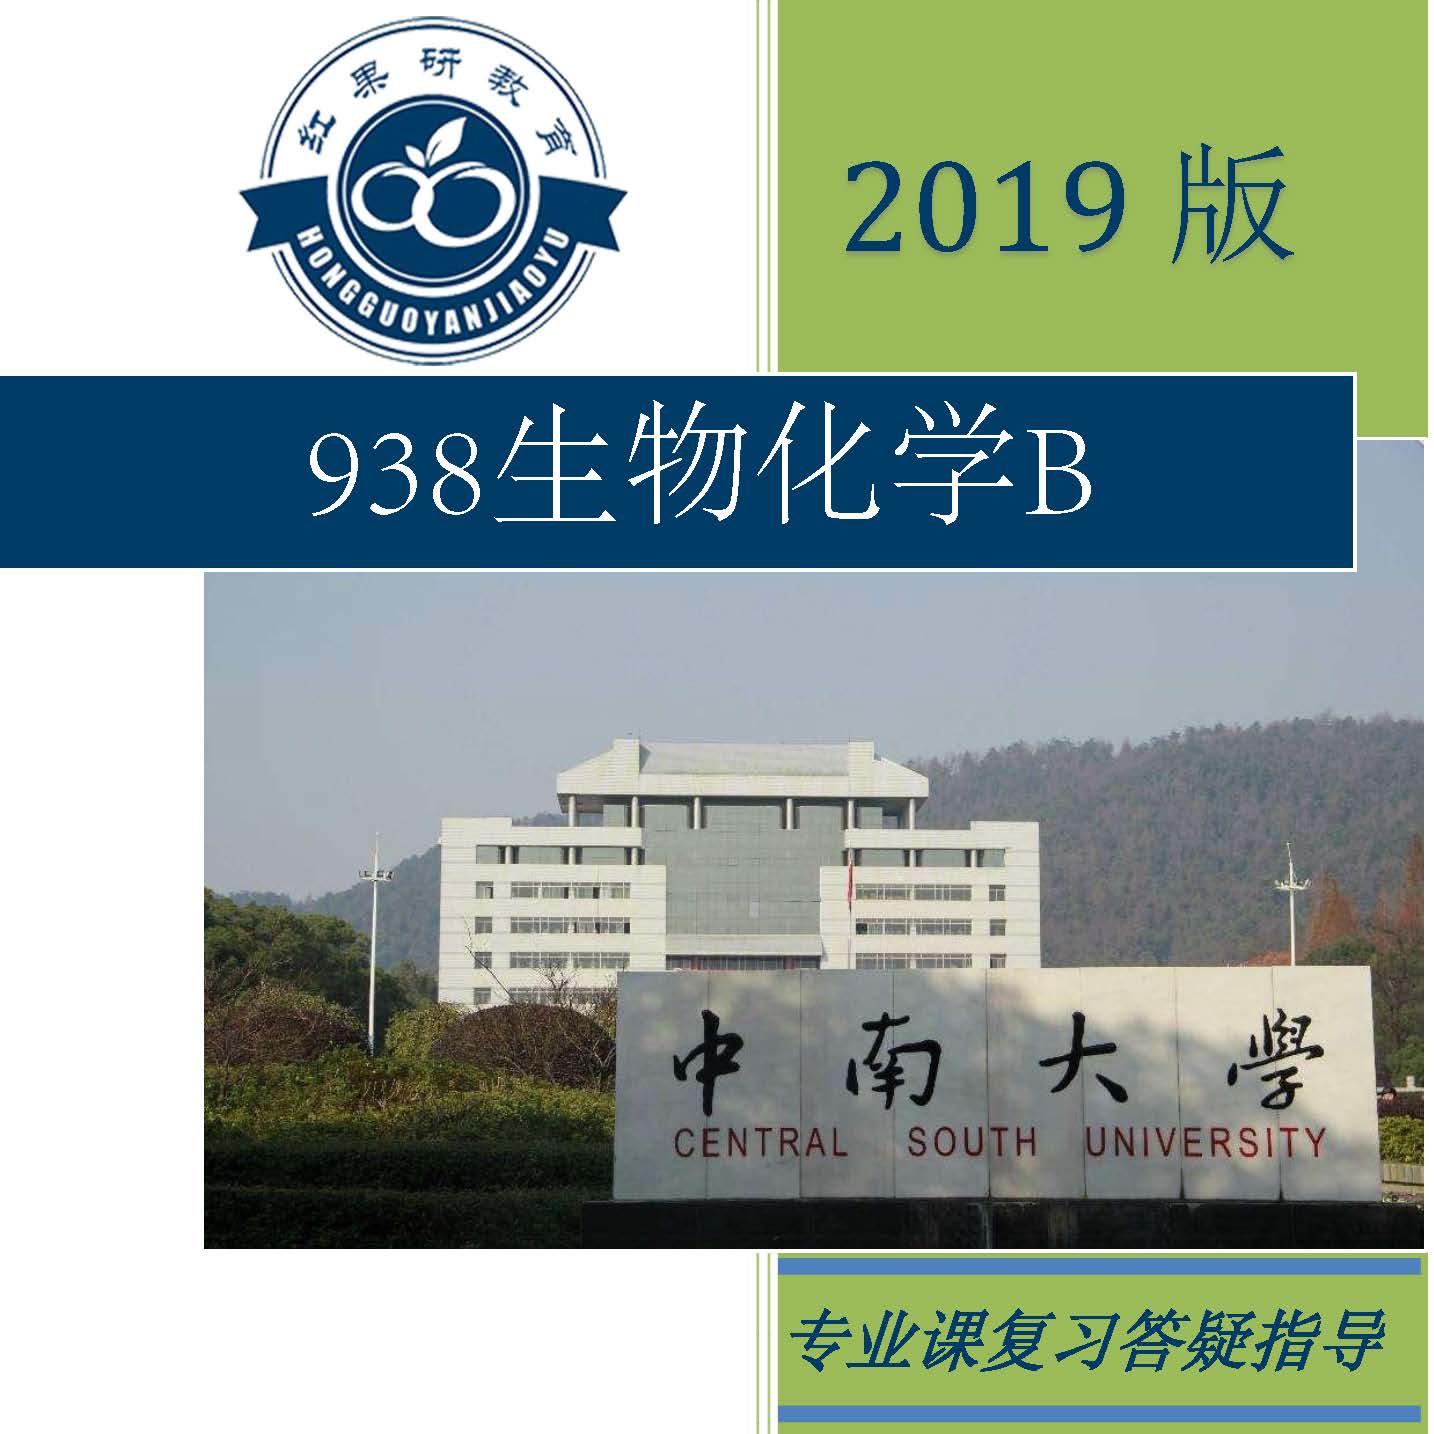 2019年中南大学 938生物化学b 考研 专业课 初试 咨询服务